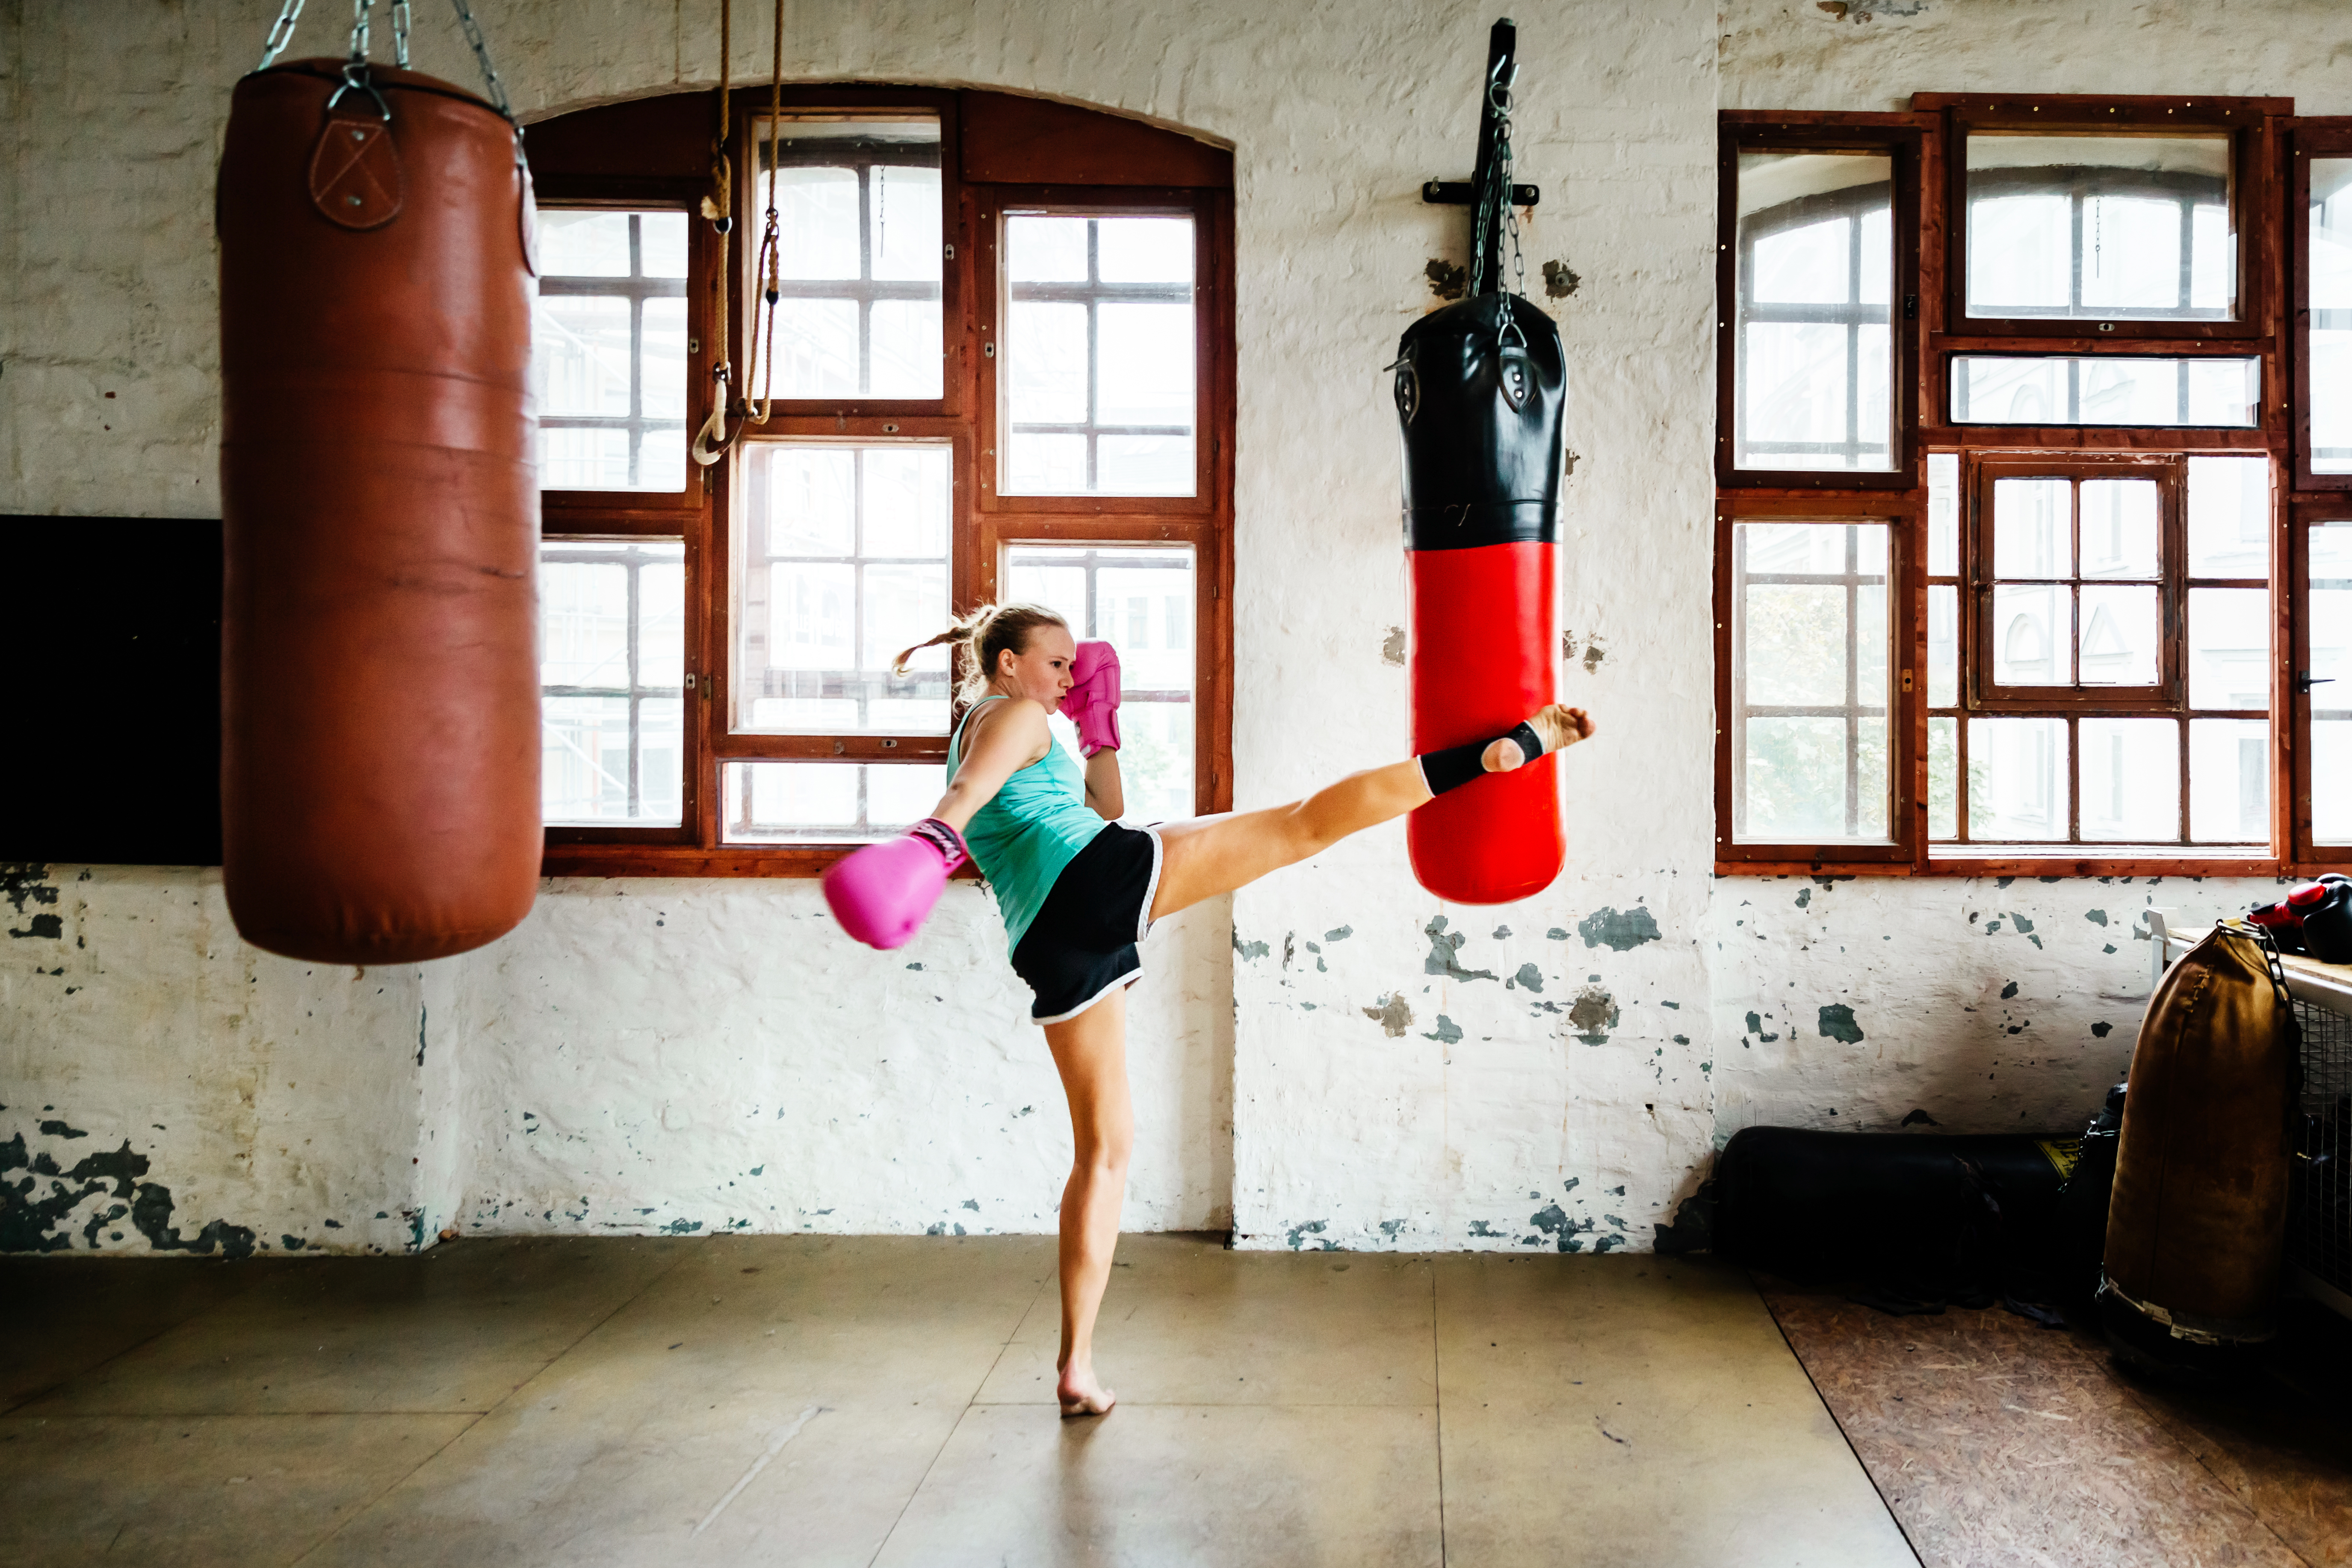 Une femme pratiquant les arts martiaux | Source : Getty Images